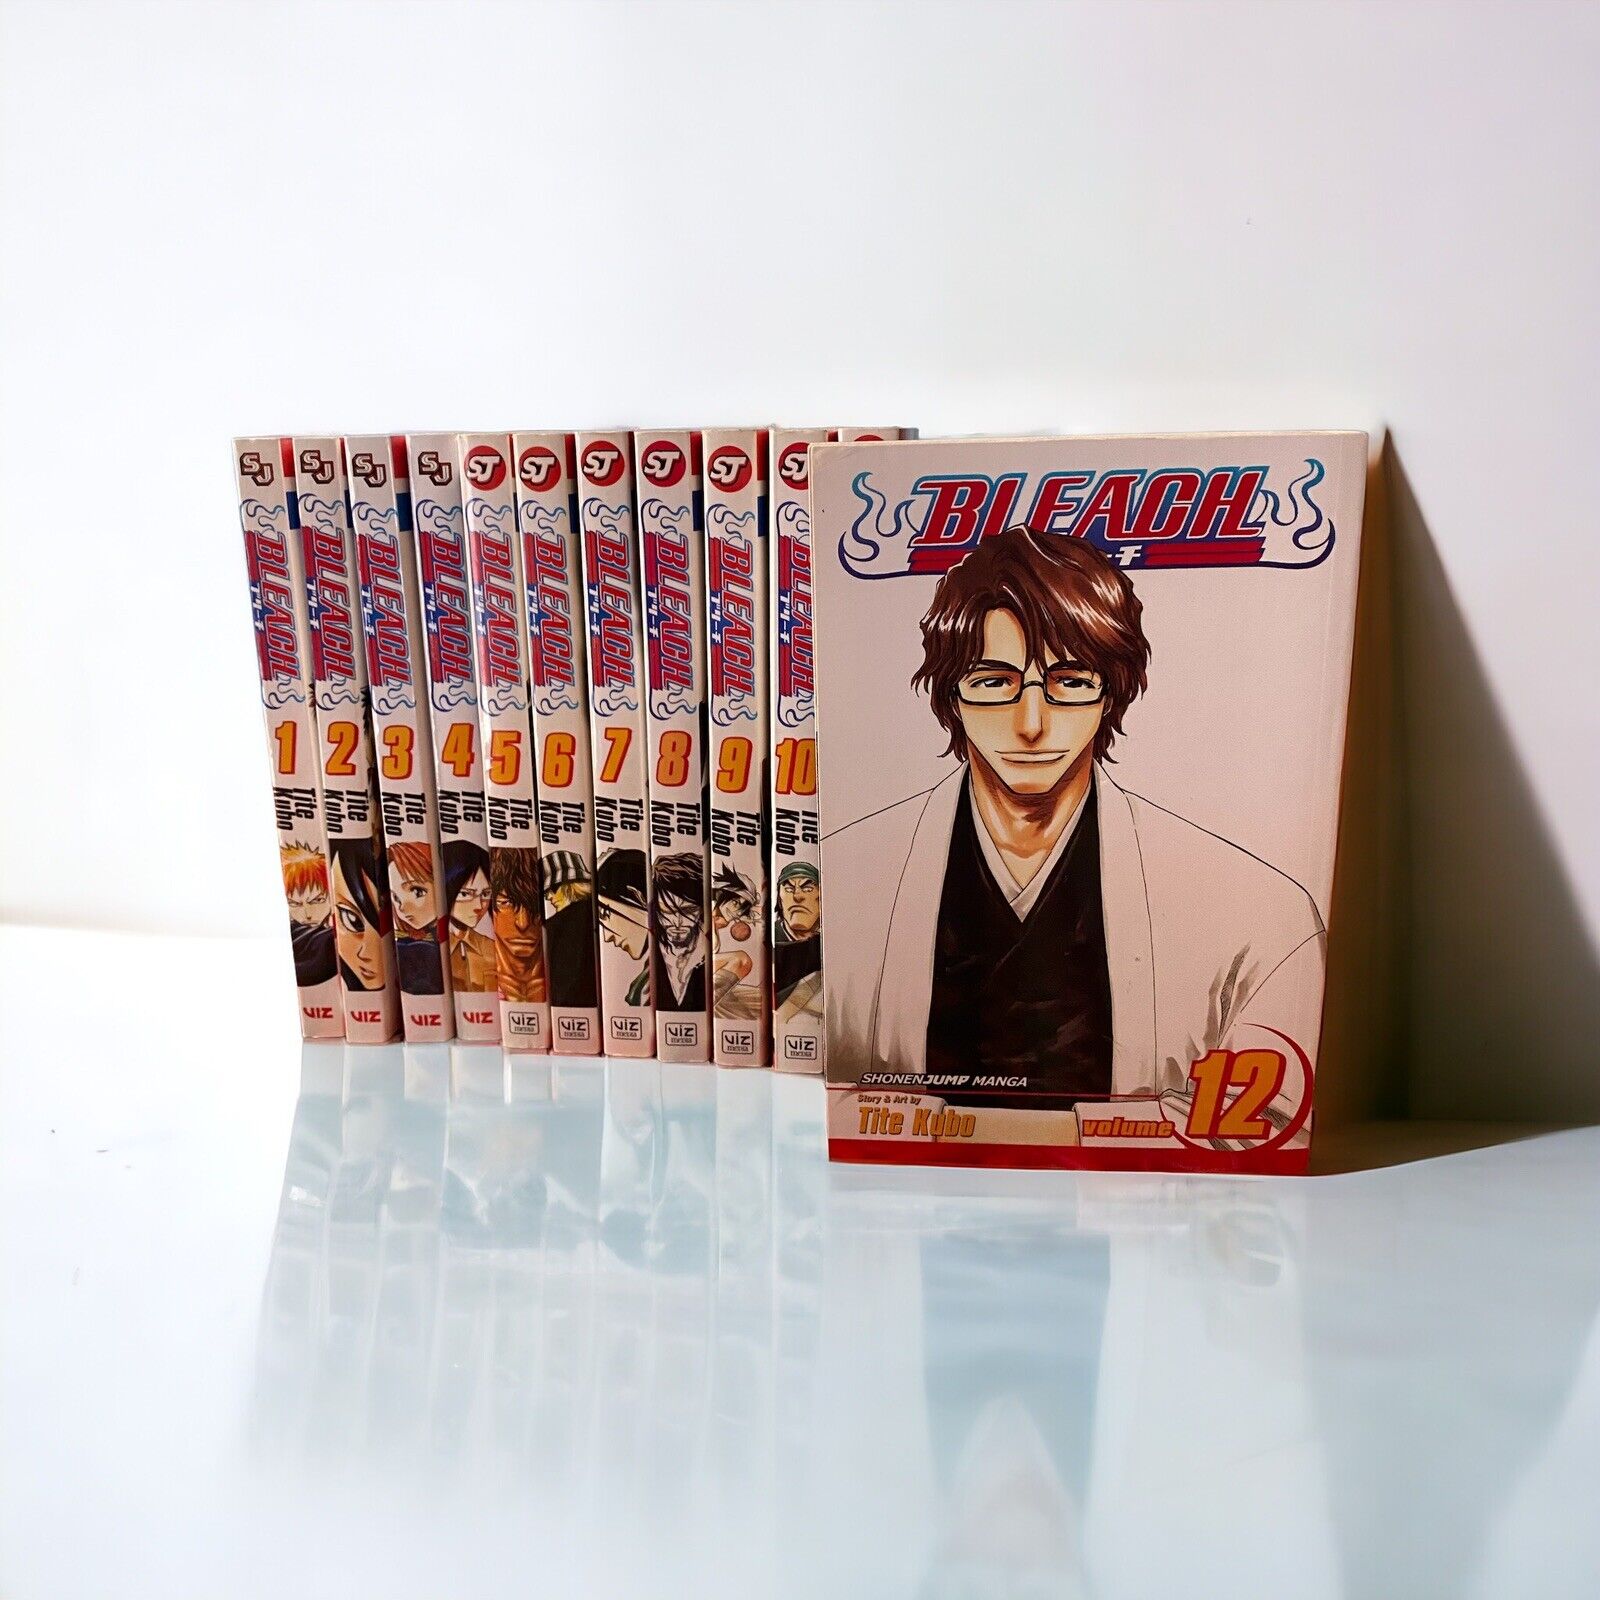 Lot of 12 Shonen Jump Bleach Manga Books: Volumes 1-12 English by Tite Kubo Lot